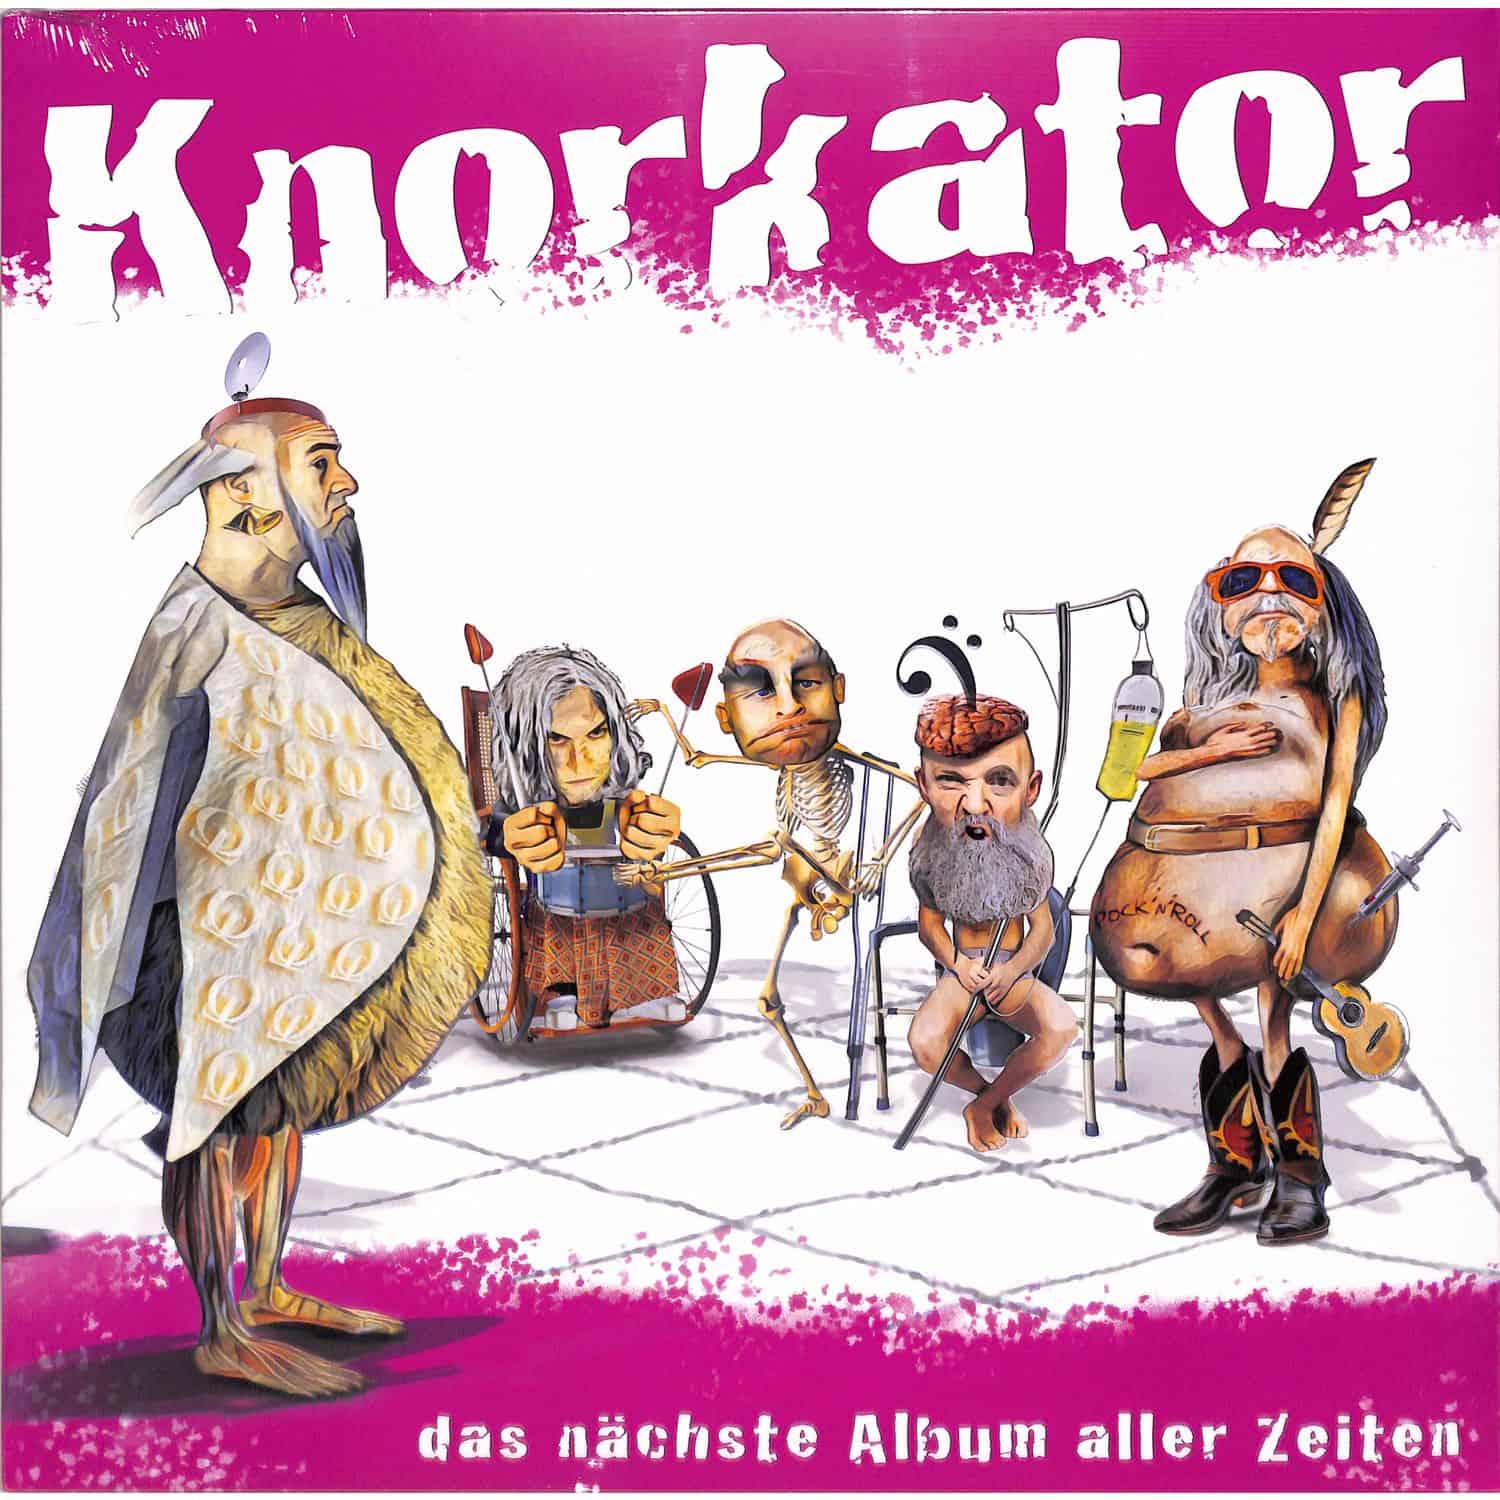 Knorkator - DAS NCHSTE ALBUM ALLER ZEITEN 